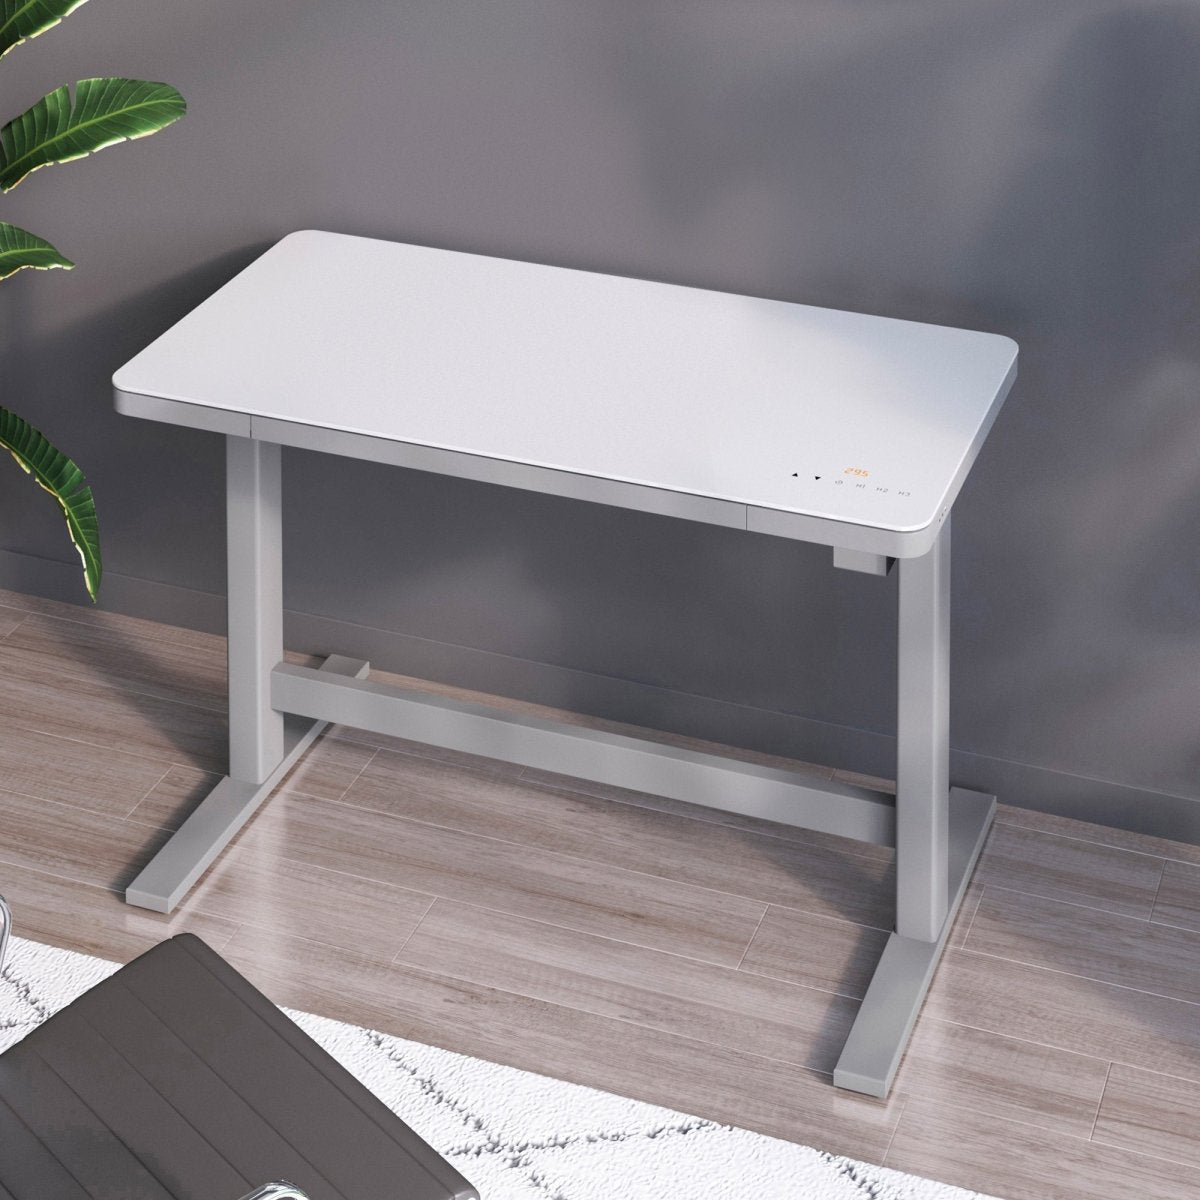 Tresanti Geller 47” Adjustable Height Desk - Alpine Outlets